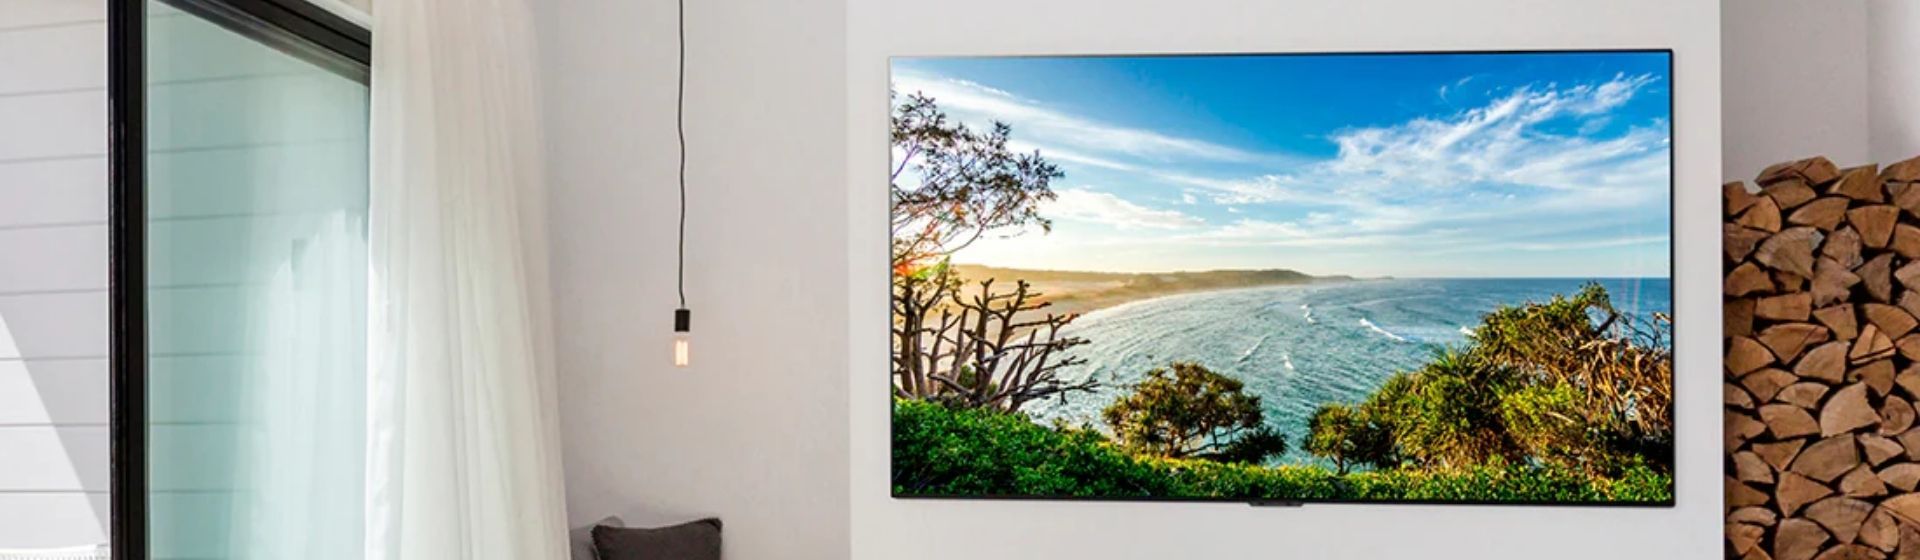 Smart TV LG G1 em uma parede branca exibindo imagem de uma praia